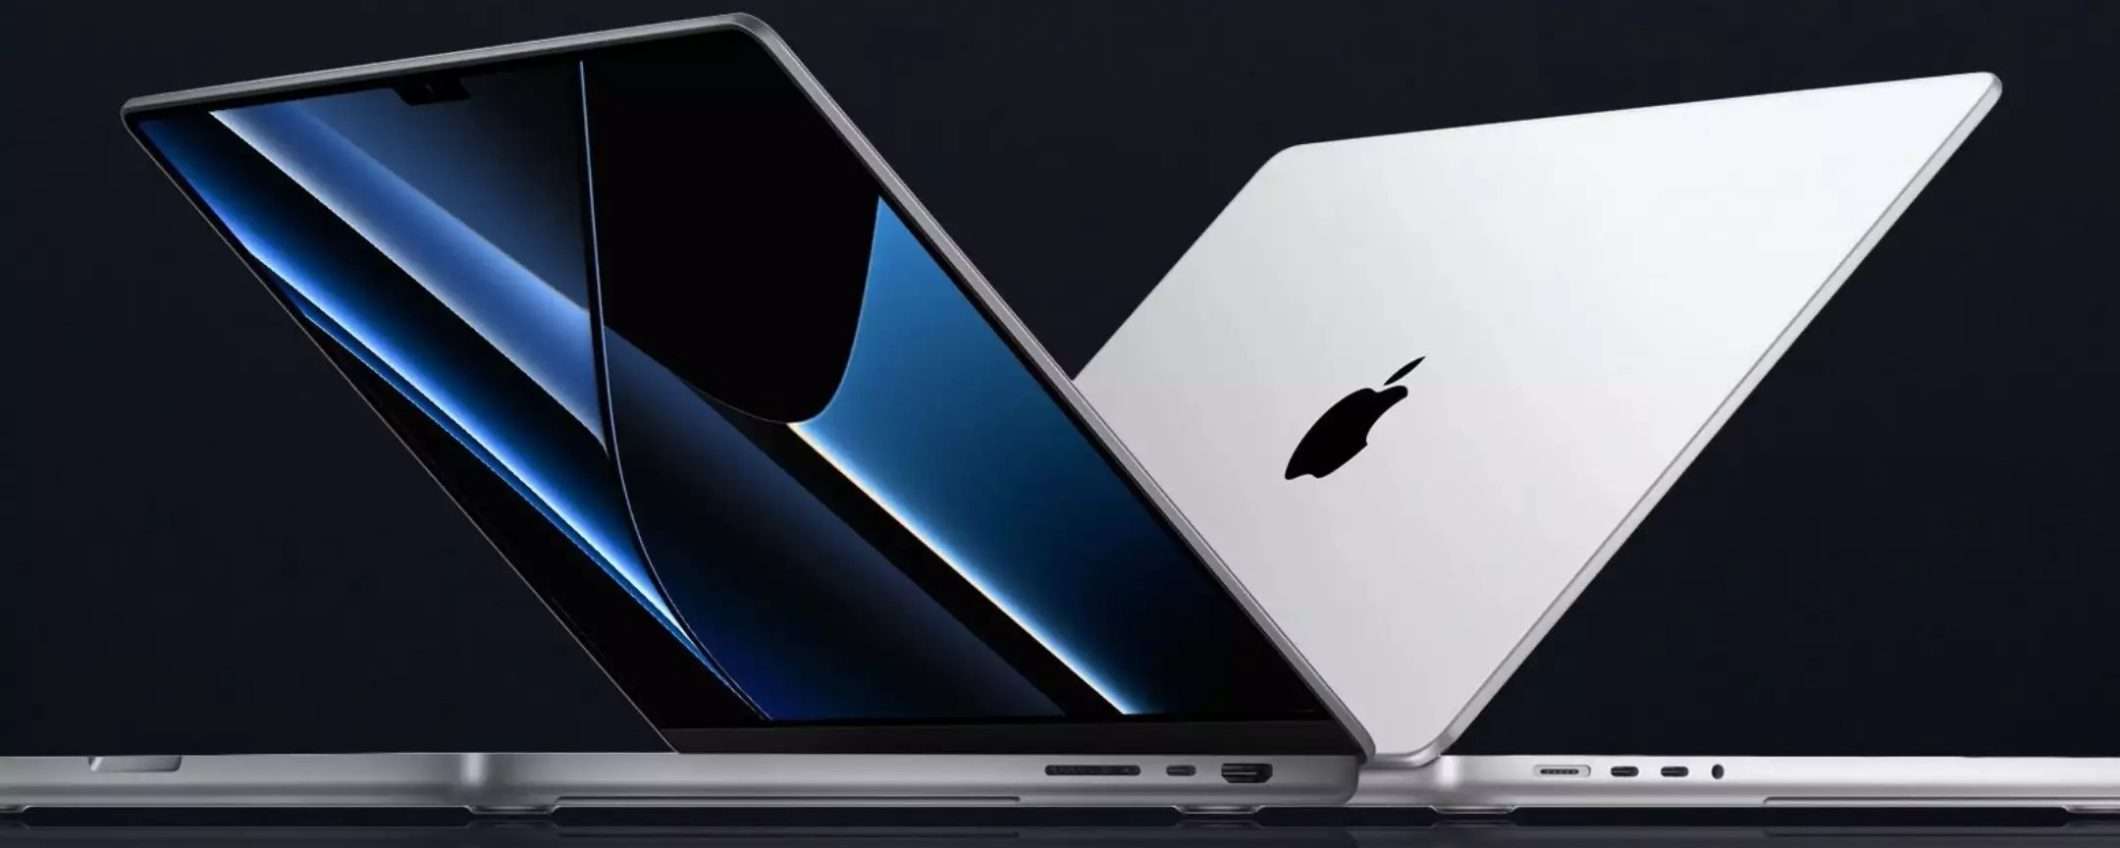 MacBook Pro: Apple sta per lanciare nuovi modelli con mini-LED